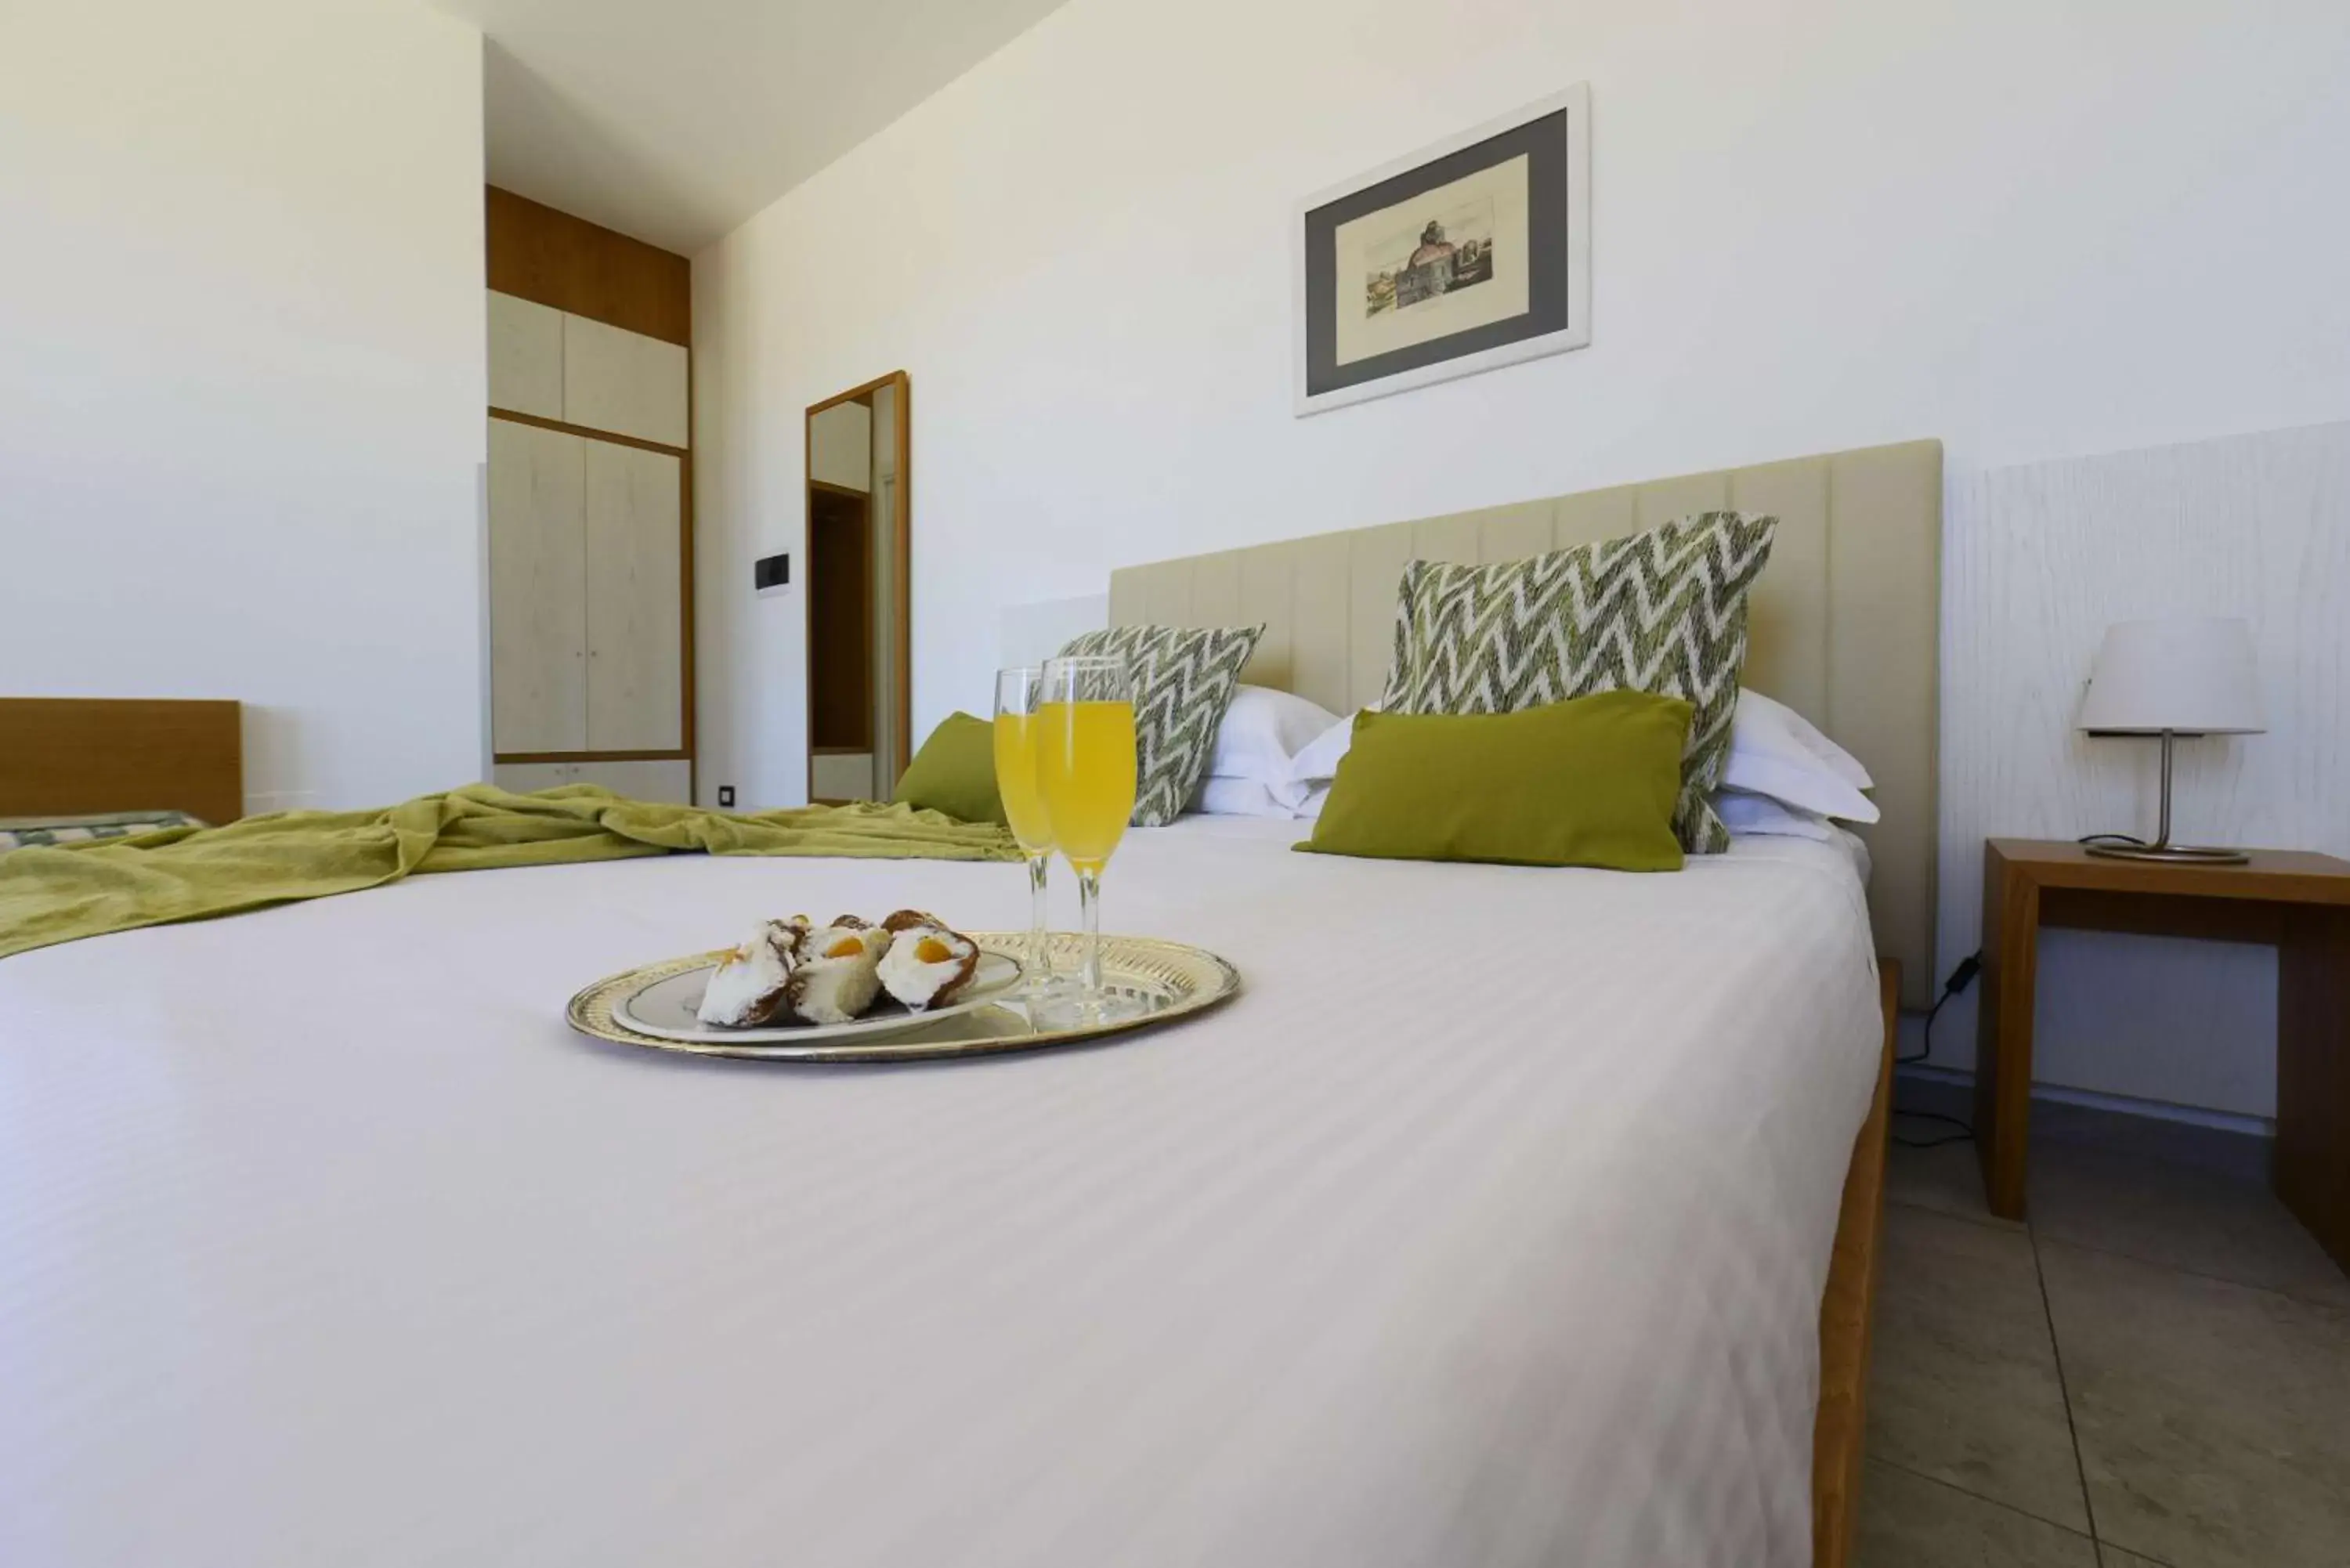 Bedroom, Bed in Best Western Hotel Martello